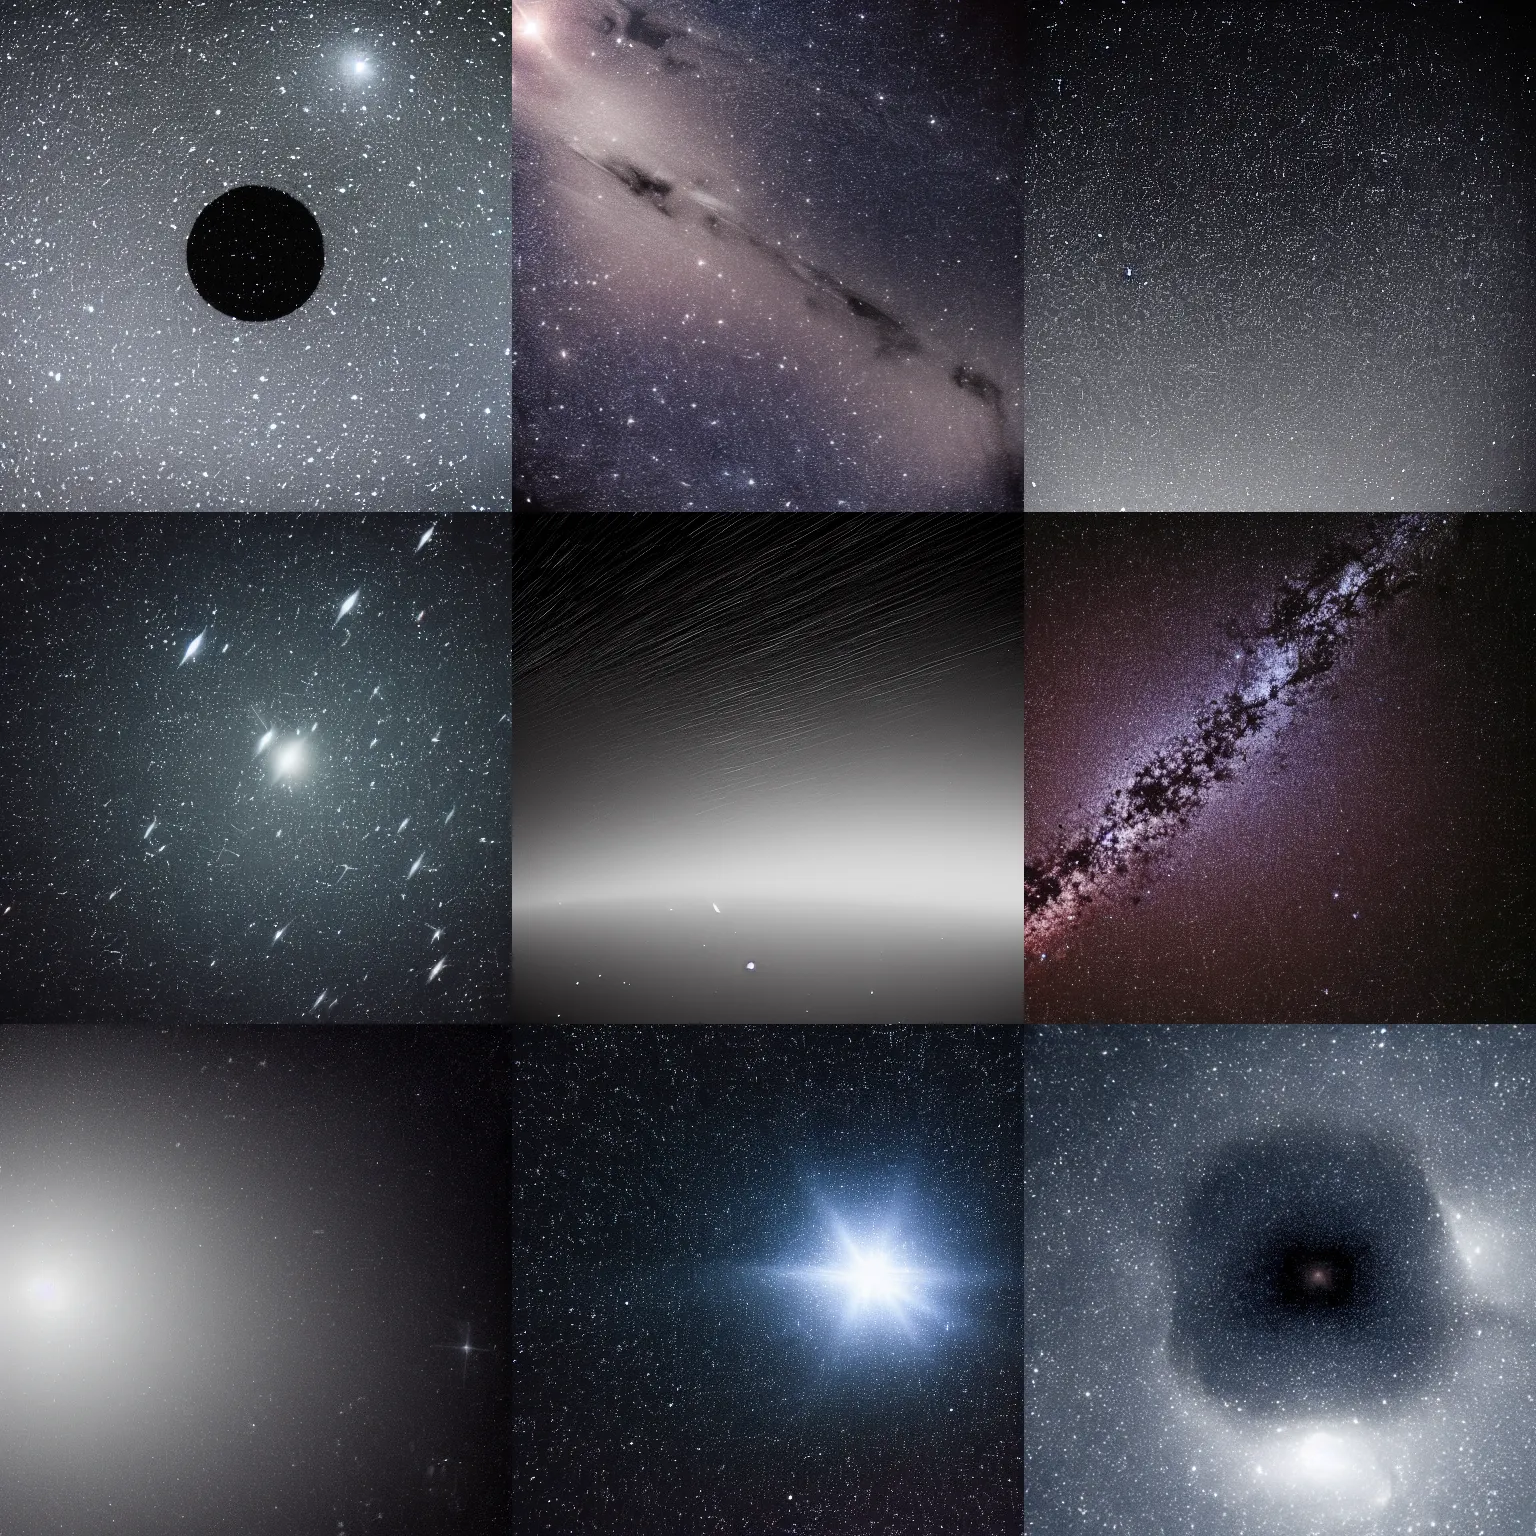 Prompt: space, dark, void of space, stars, photo, crisp focus, NASA, very detailed, high contrast, deep blacks,